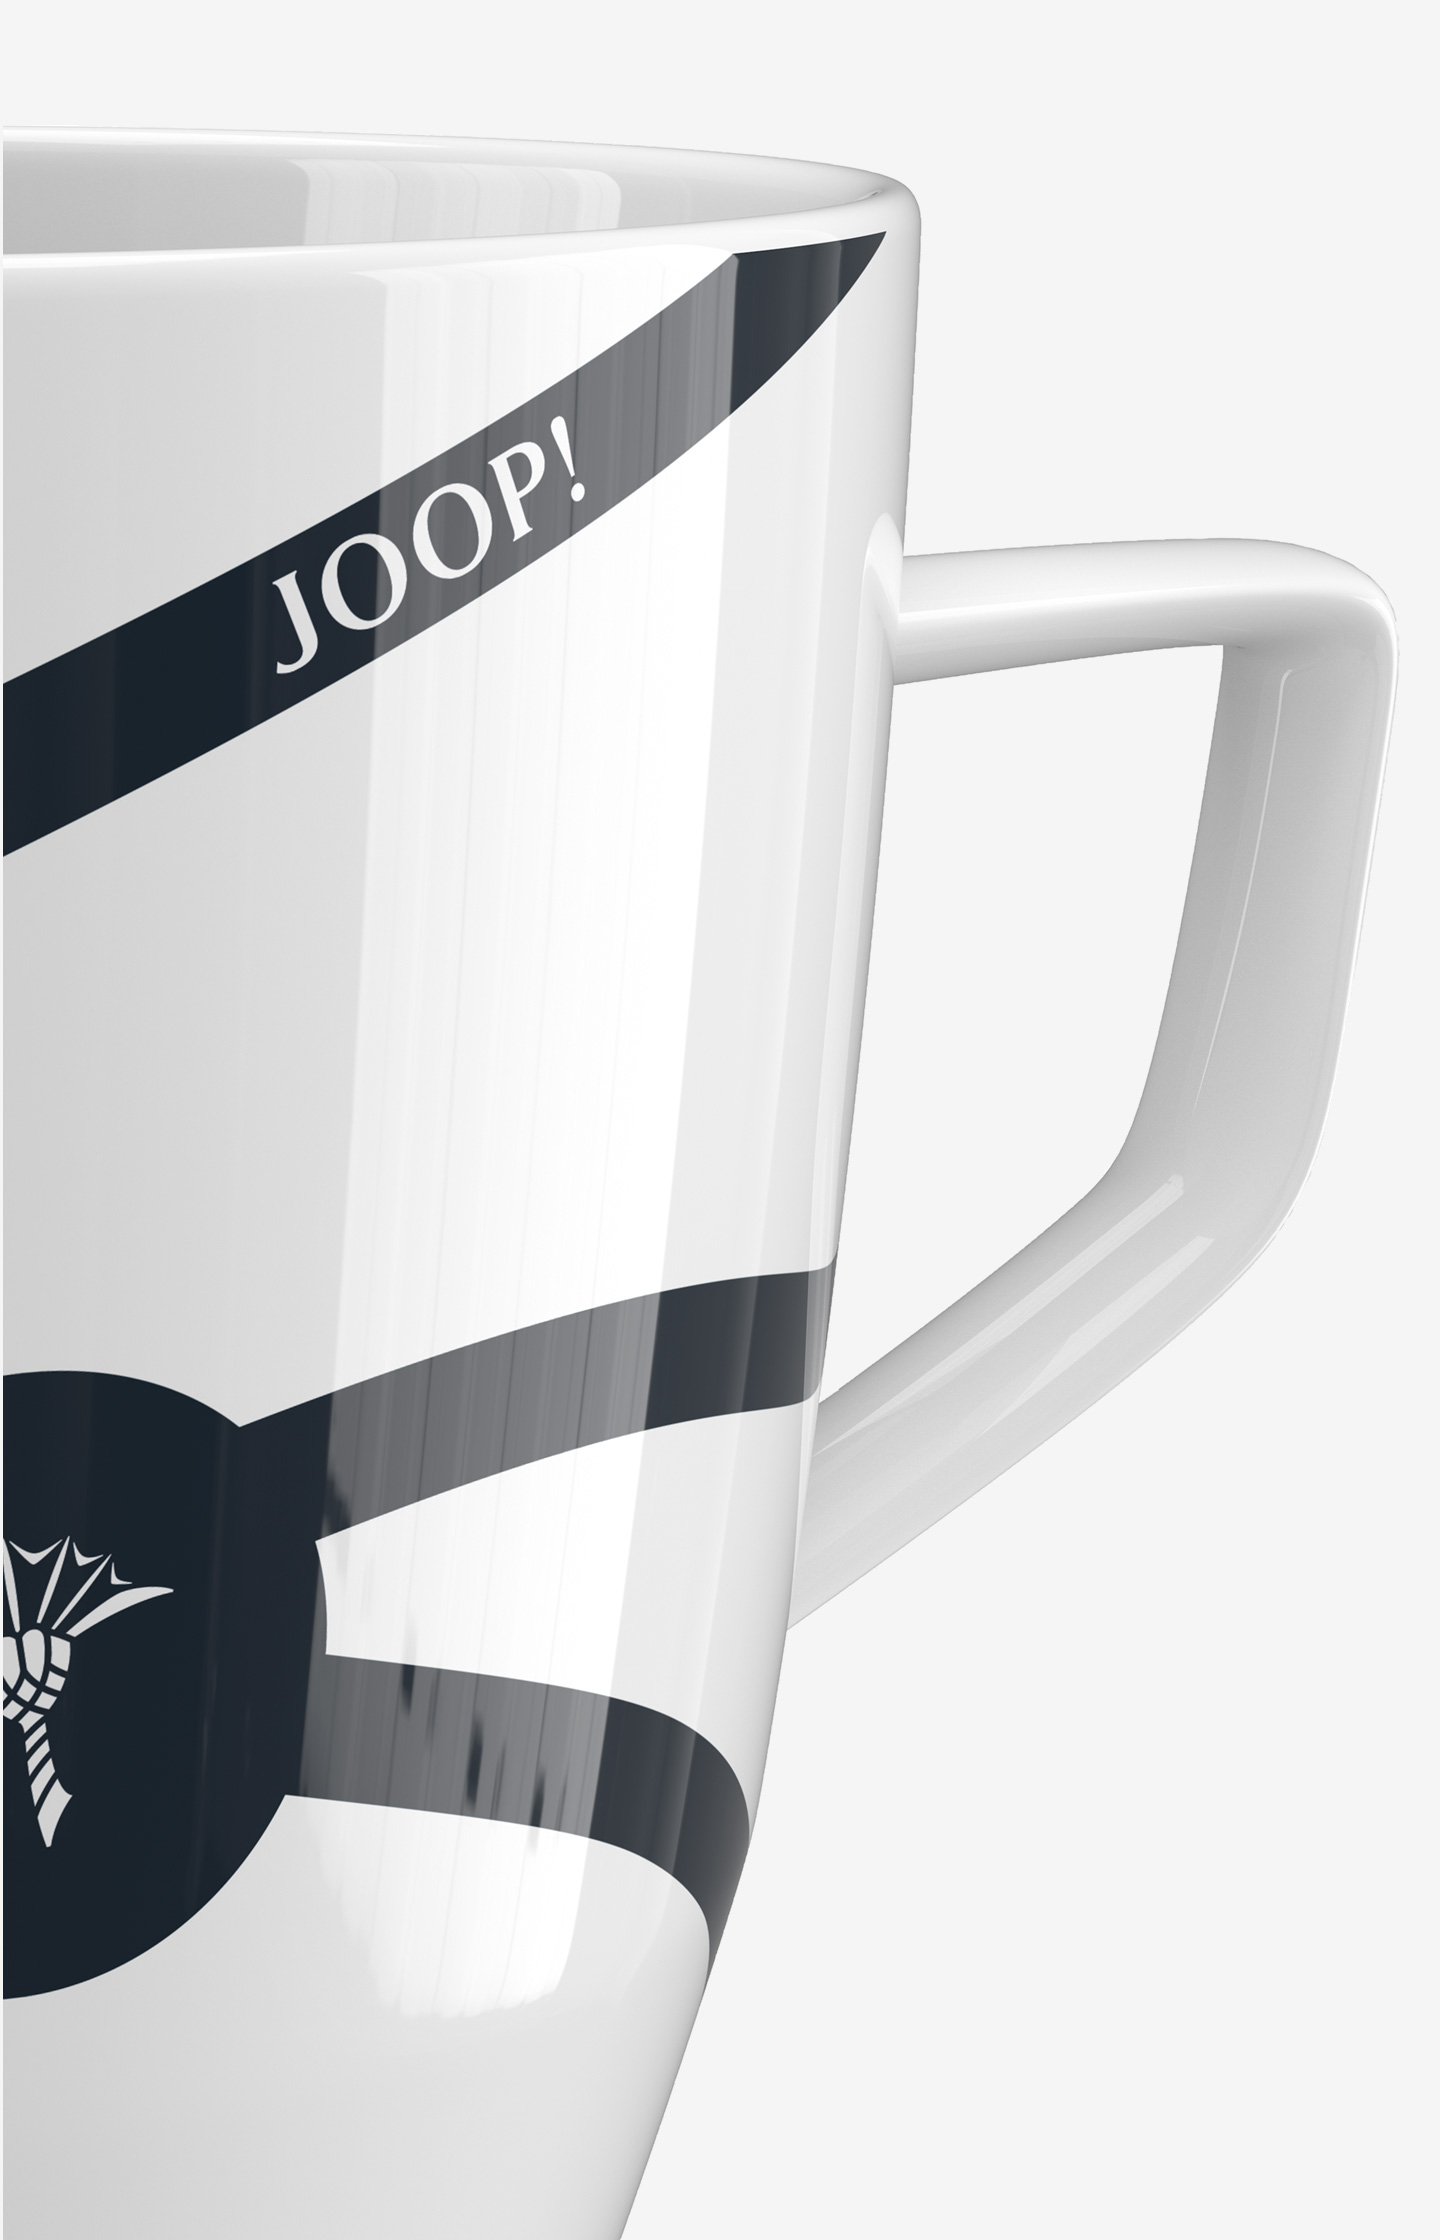 COLLECTION LOGO JOOP! JOOP! - GLAMOUR RIBBON Online-Shop im DINING